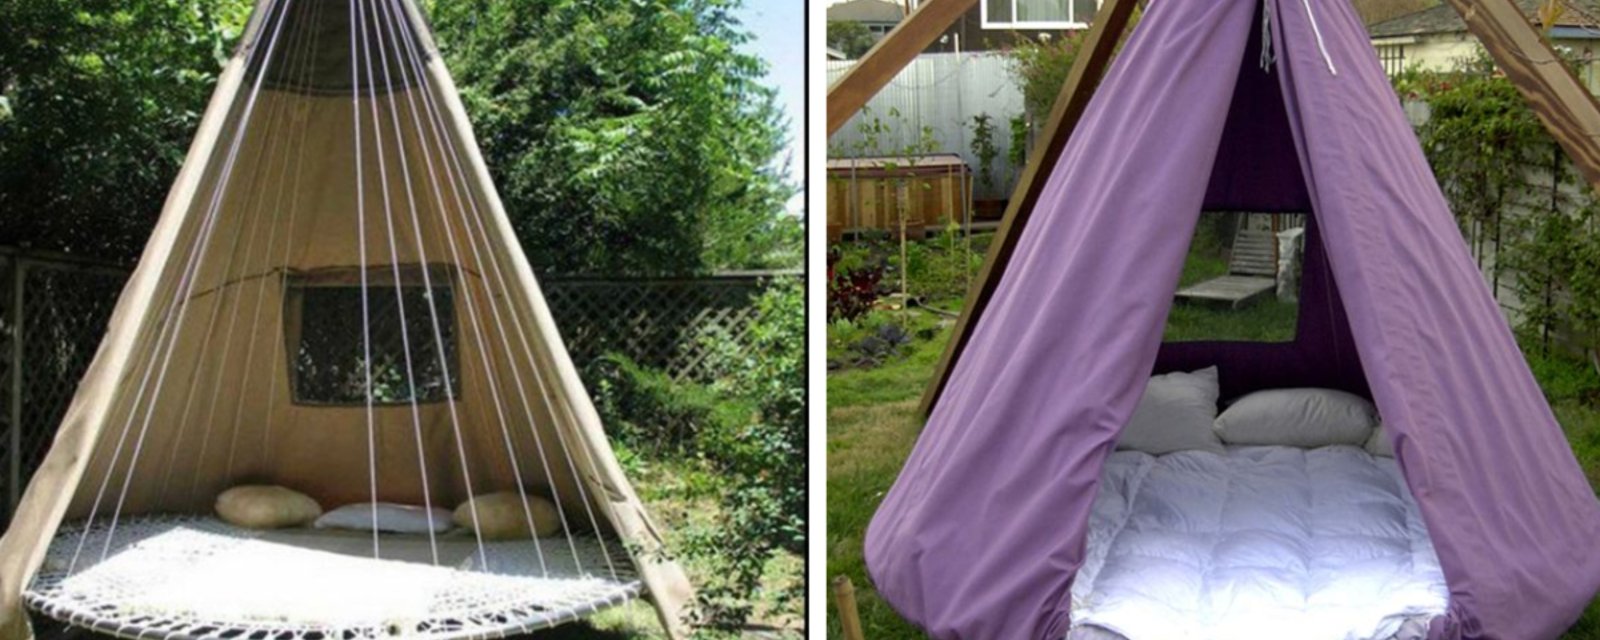 Transformez votre vieille trampoline en un superbe lit qui se balance